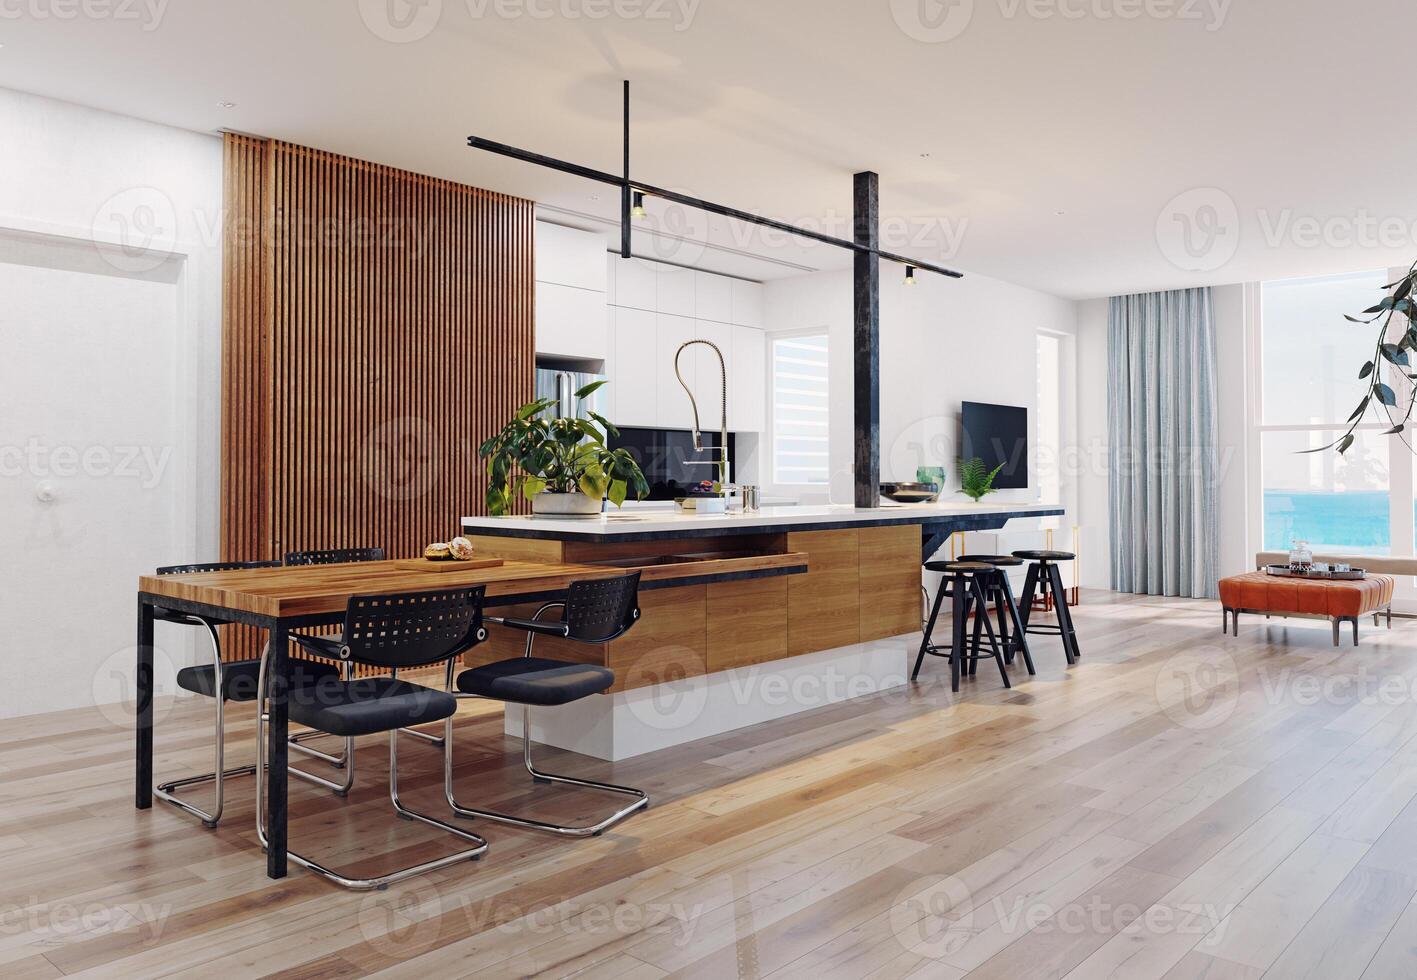 modern kitchen interior. photo